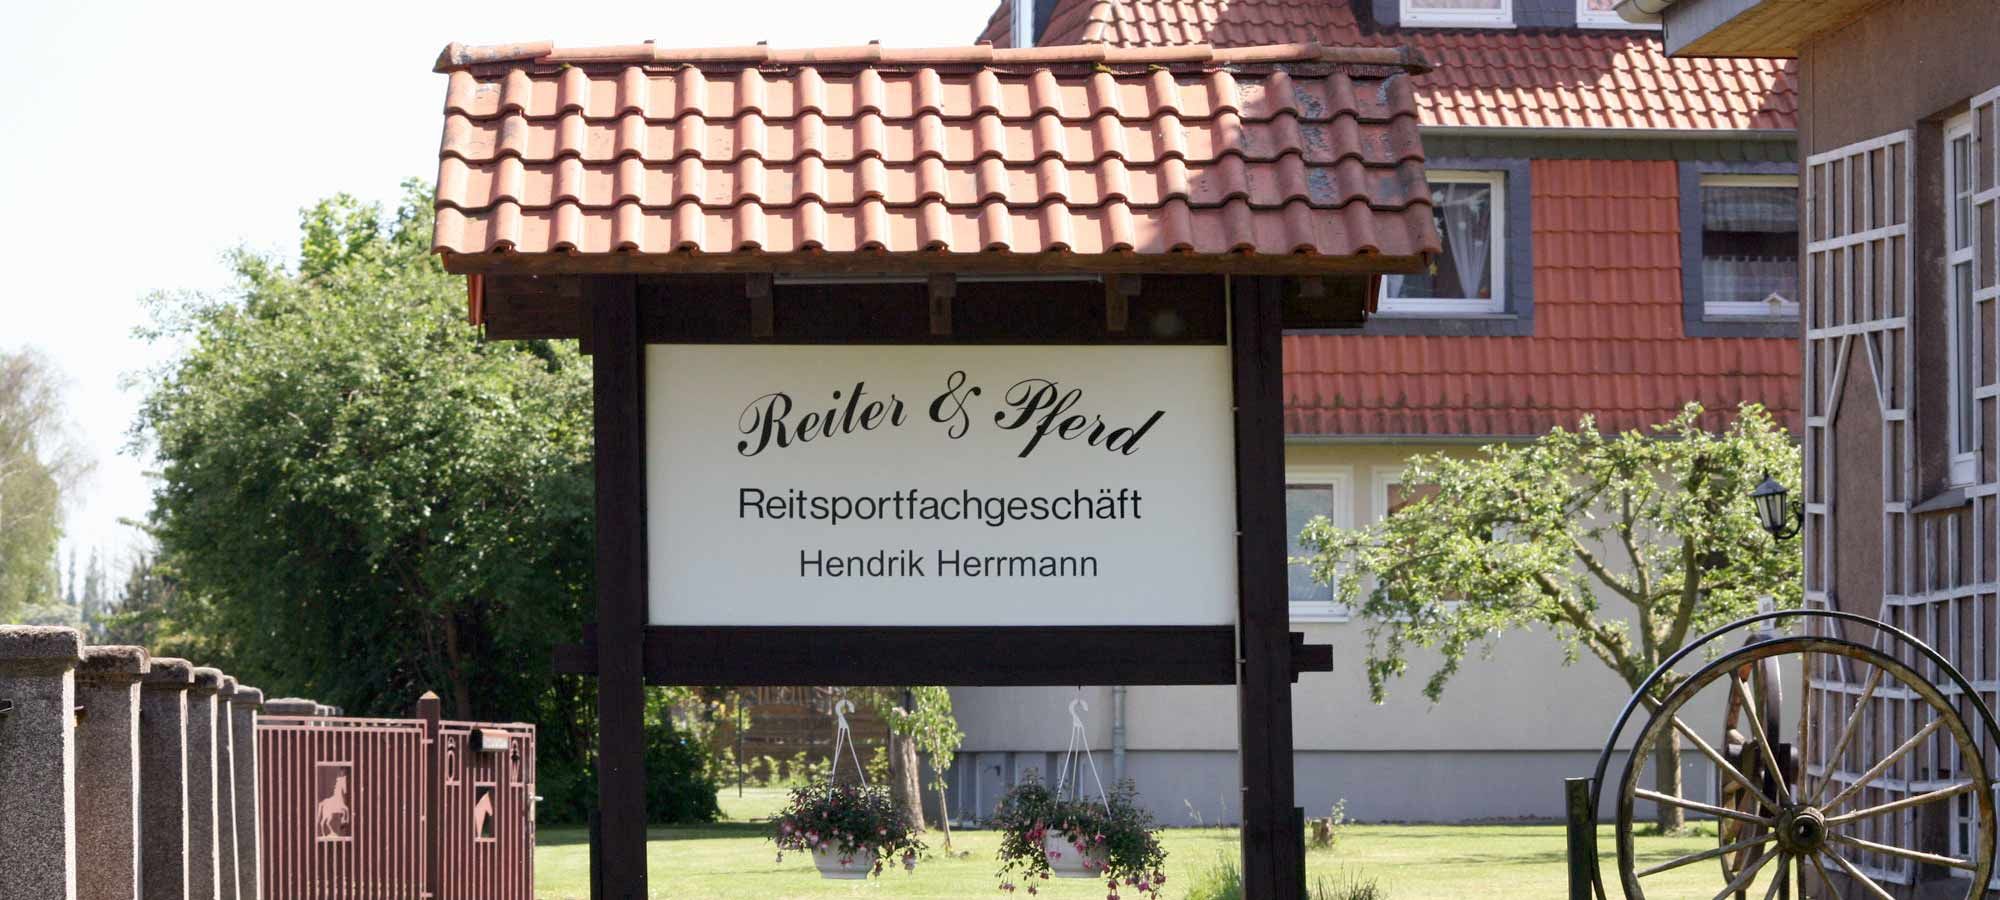 Reiter & Pferd Hendrik Herrmann in Salzgitter, Firmenschild im Vorgarten